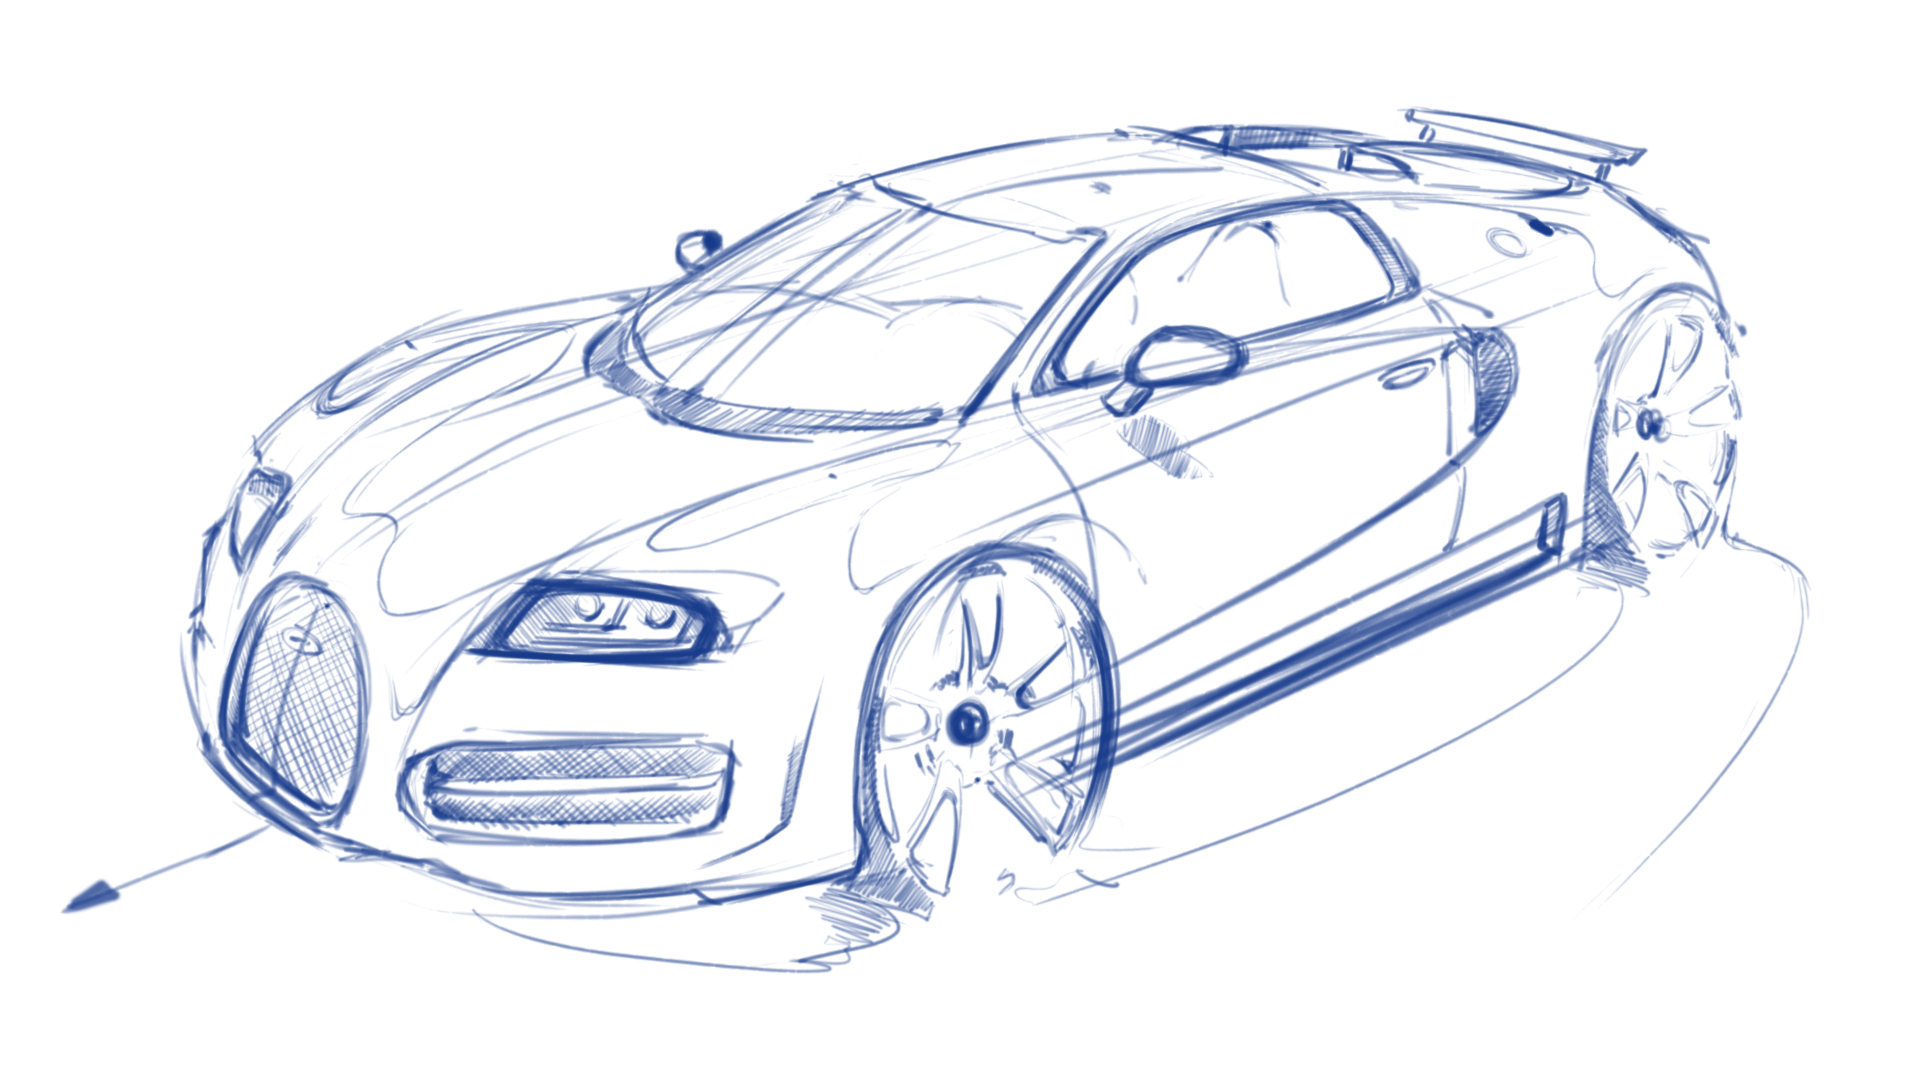 Bugatti Chiron hypercar